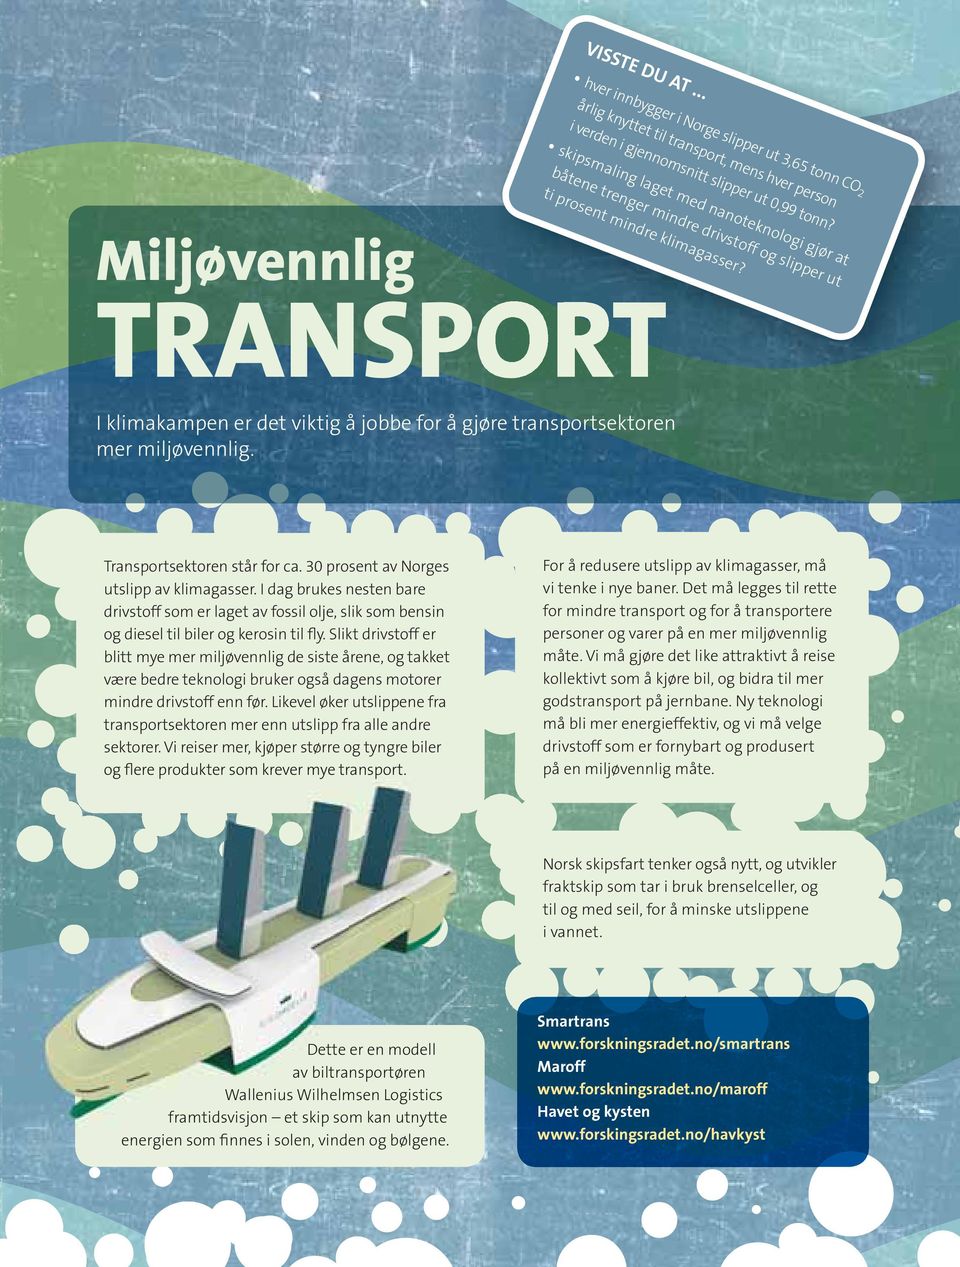 båtene trenger mindre drivstoff og slipper ut ti prosent mindre klimagasser? Transportsektoren står for ca. 30 prosent av Norges utslipp av klimagasser.